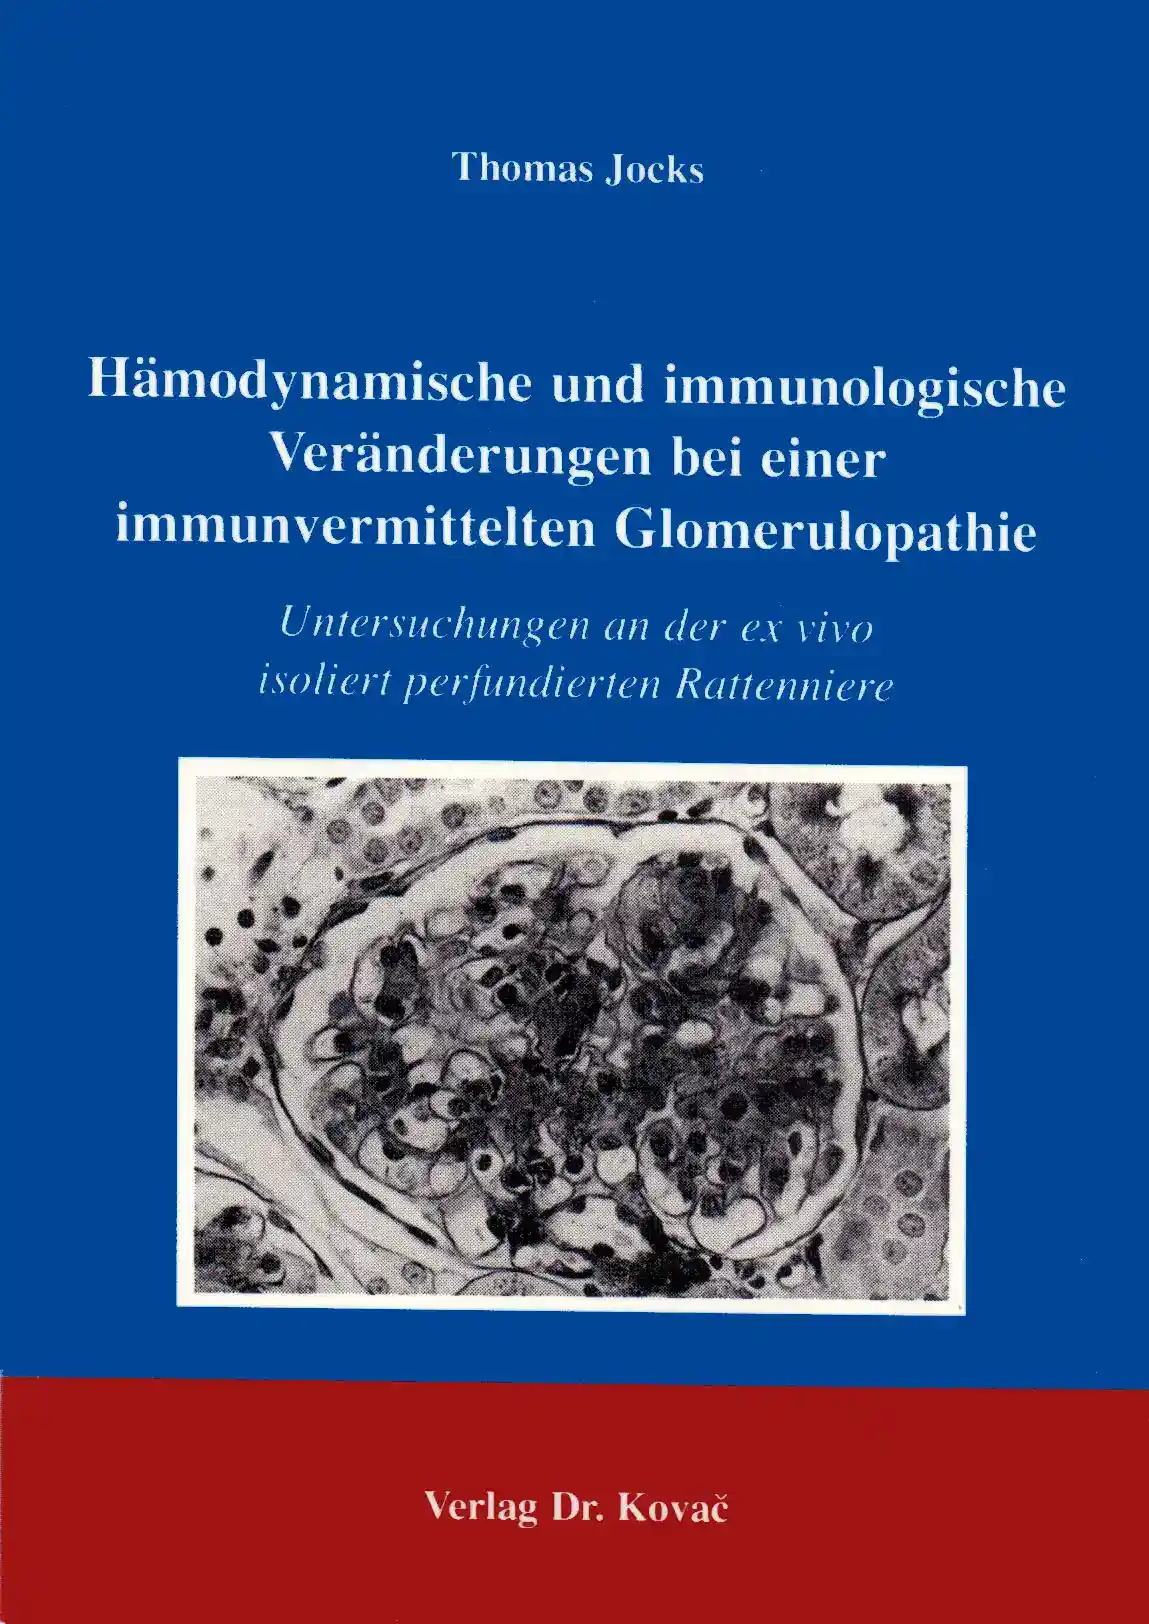 : Hämodynamische und immunologische Veränderungen bei einer immunvermittelten Glomerulopathie